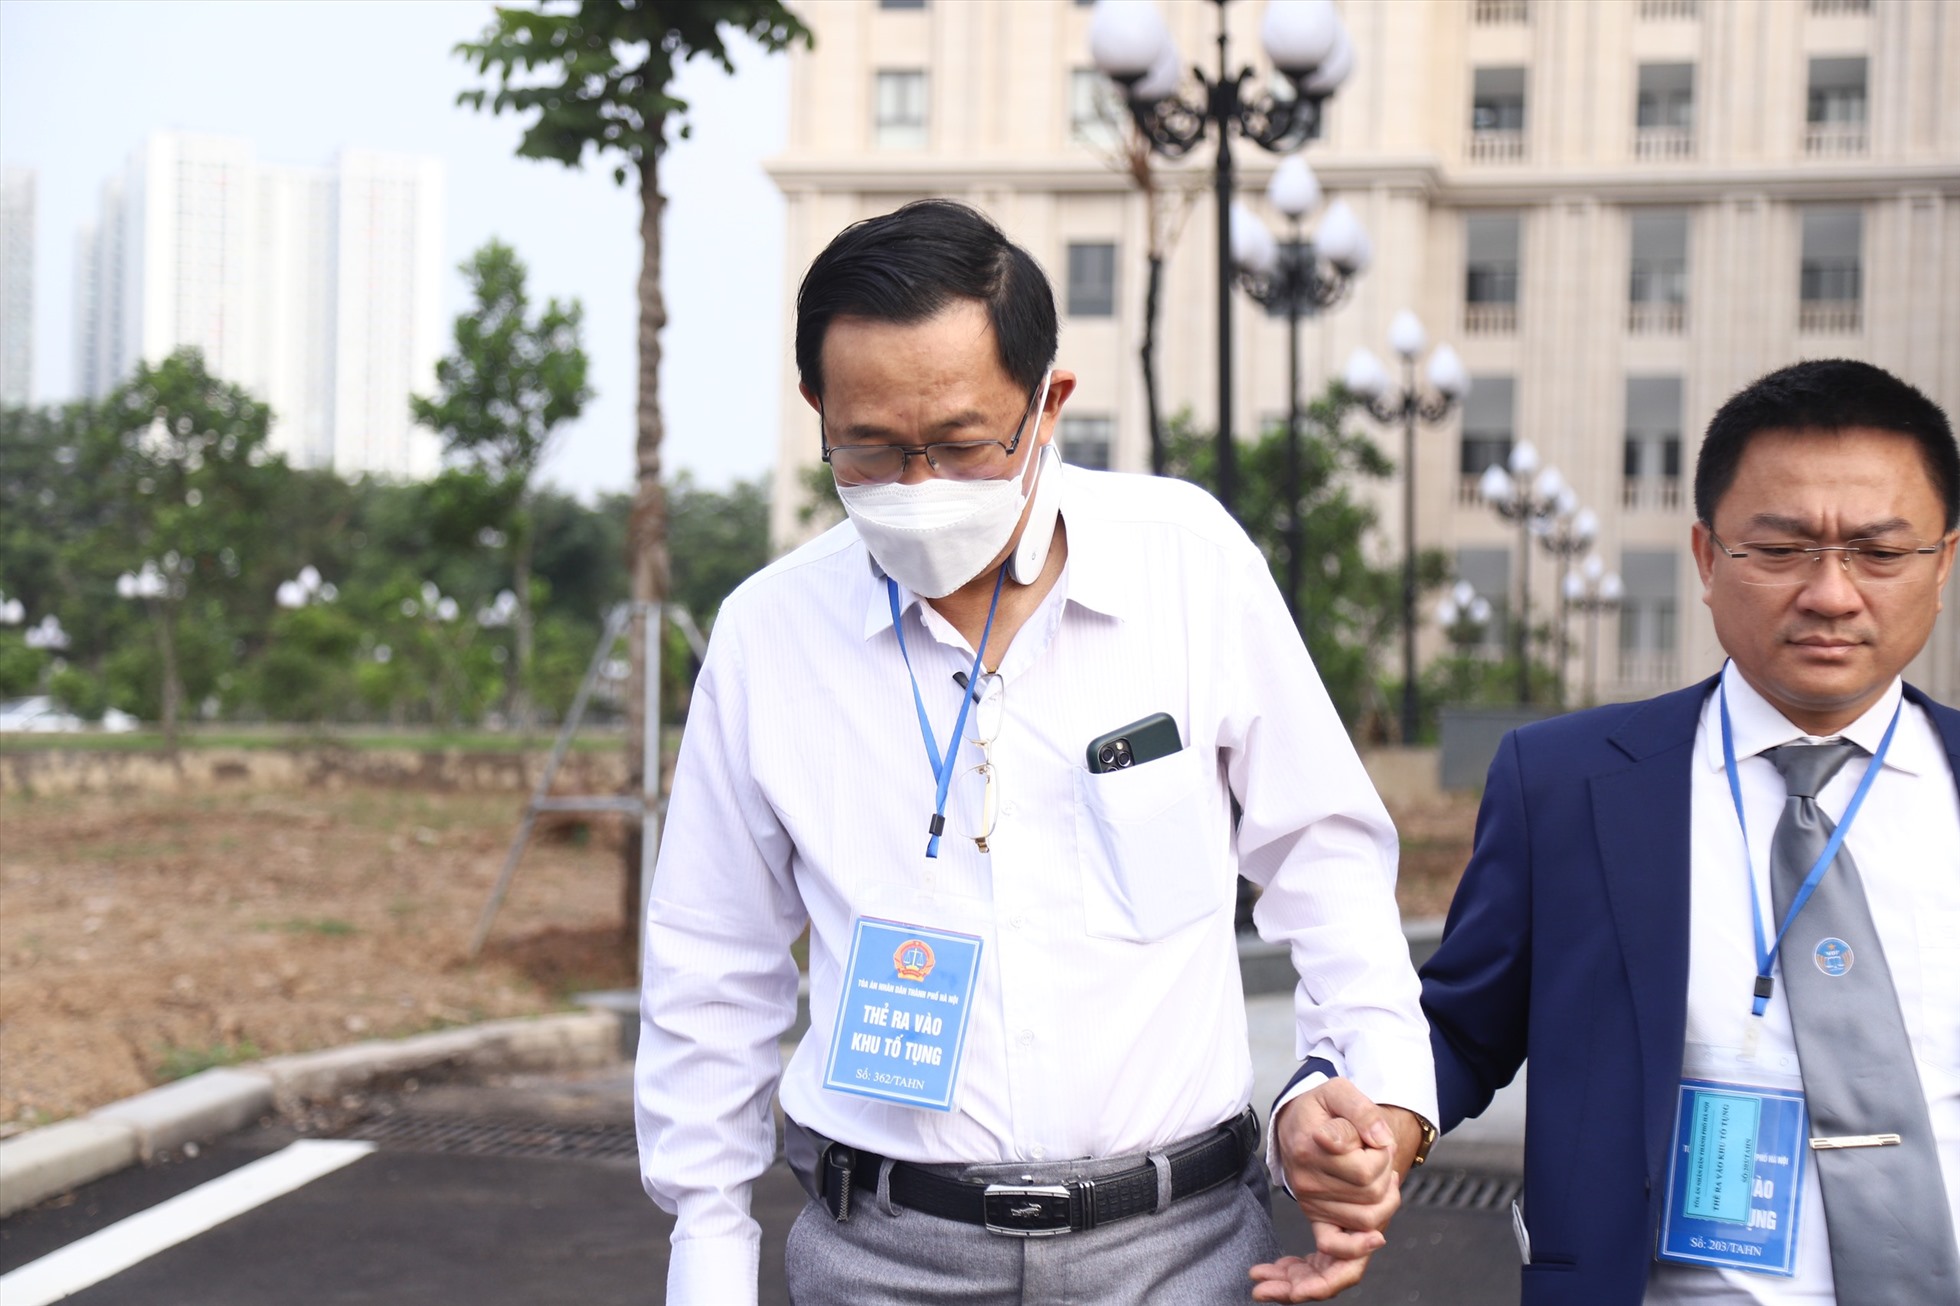 Ông Cao Minh Quang bị cáo buộc thiếu trách nhiệm nên không biết Công ty Dược Cửu Long do bị cáo Lương Văn Hoá - cựu Tổng Giám đốc giữ lại hơn 3,8 triệu USD tiền được đối tác giảm cho. Ảnh: Việt Dũng